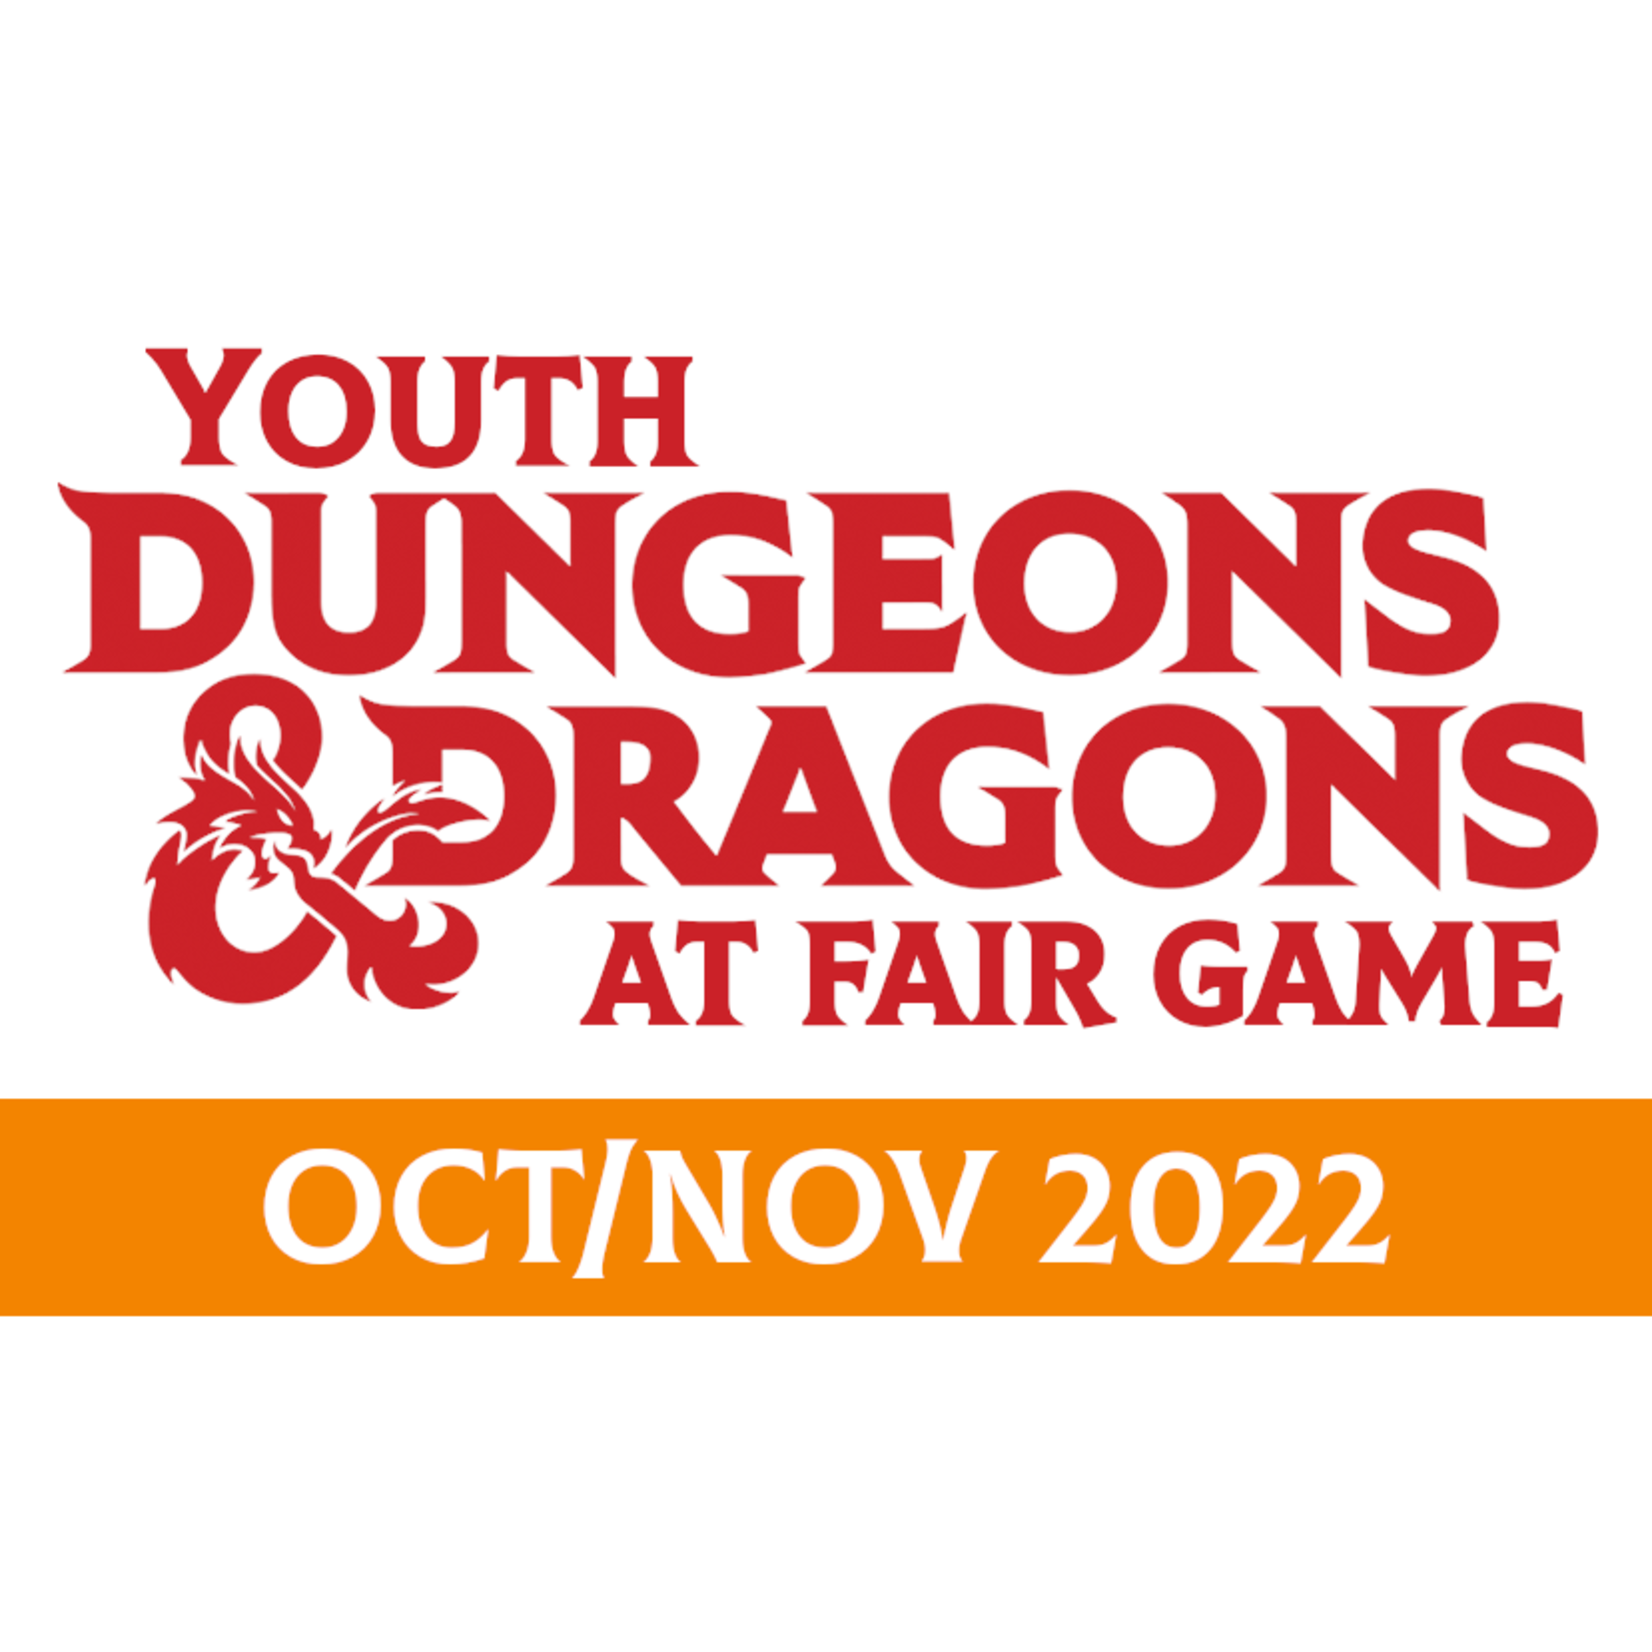 Fair Game YDND Oct/Nov 2022: Group LF1 - Thursday La Grange 4-6 PM CST (Ages 8-13)